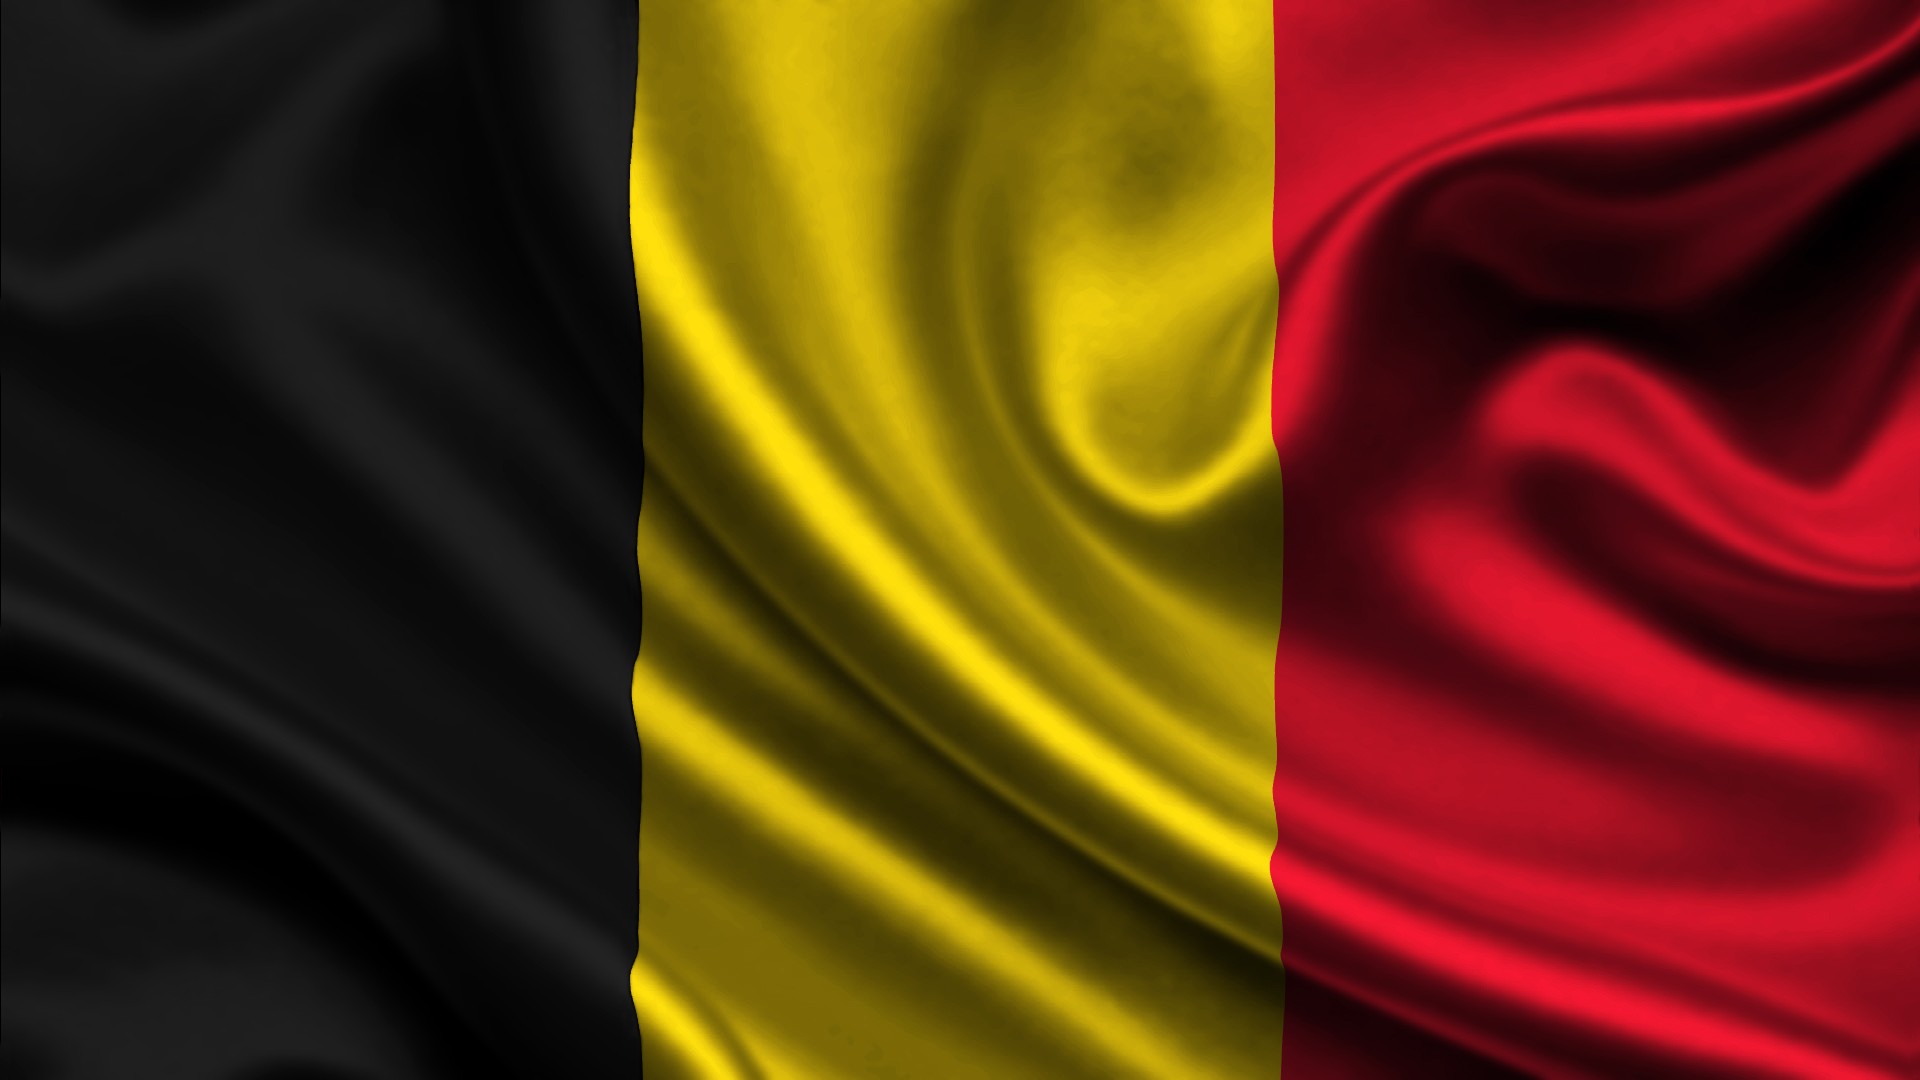 General 1920x1080 Belgium flag black yellow red digital art